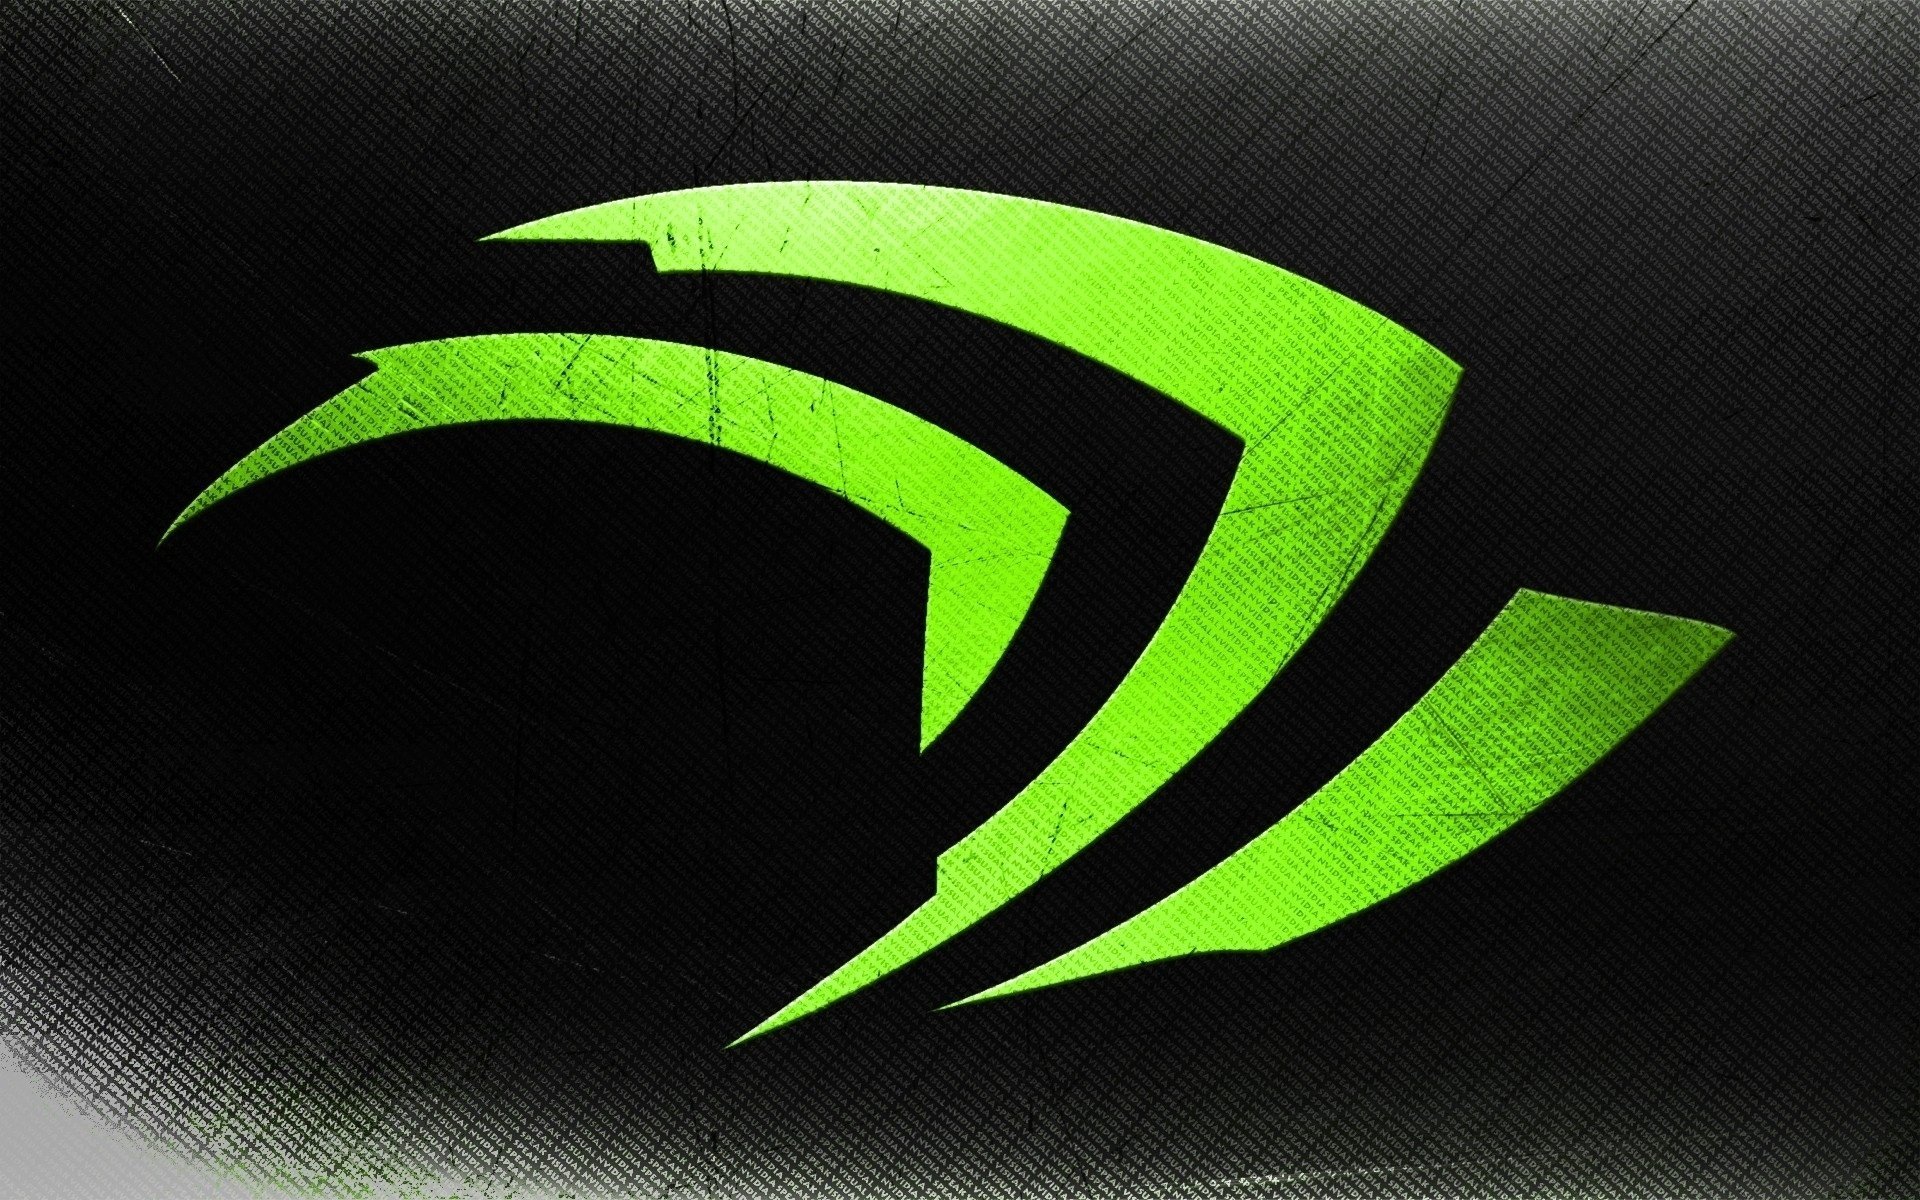 Nvidia brand in green